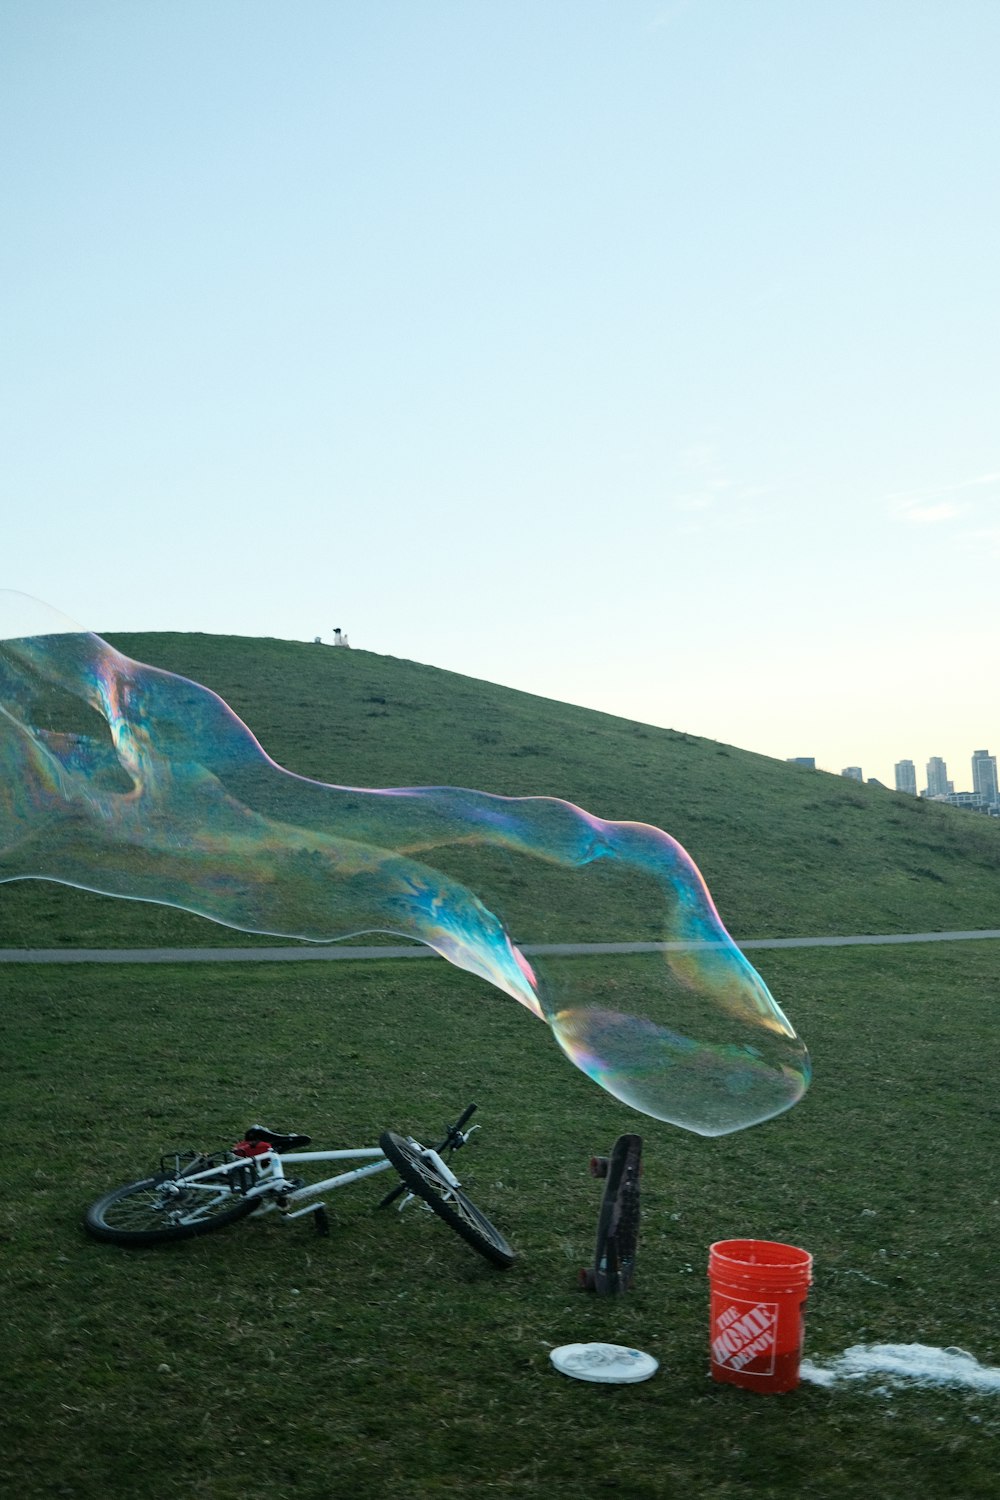 Una gran burbuja está siendo volada por una bicicleta